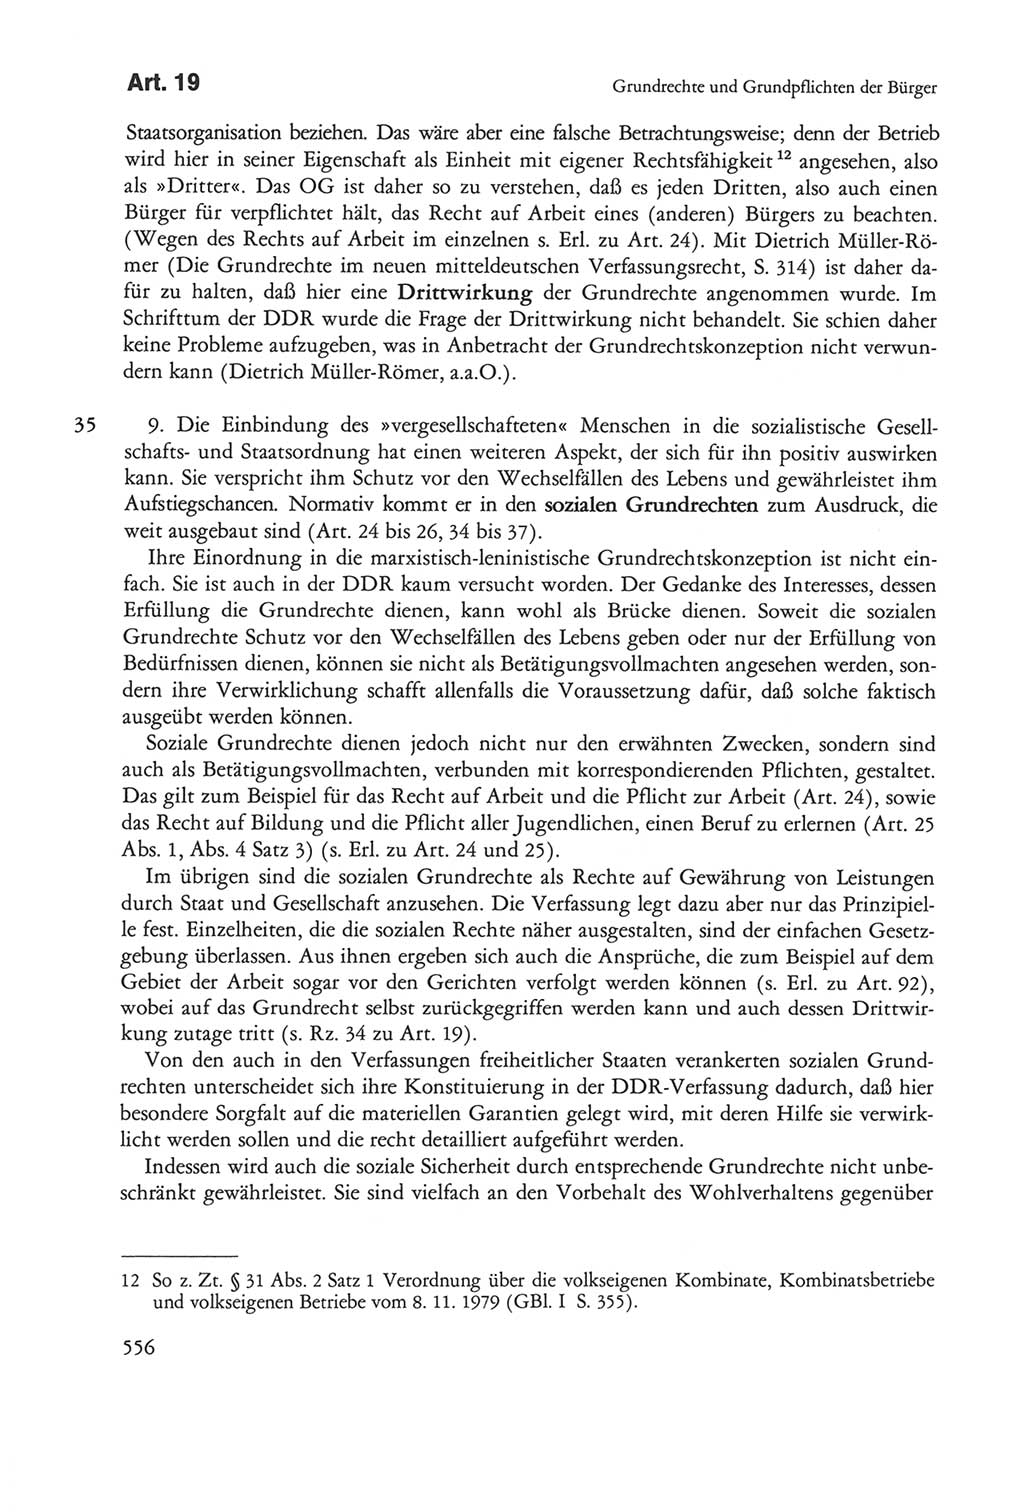 Die sozialistische Verfassung der Deutschen Demokratischen Republik (DDR), Kommentar mit einem Nachtrag 1997, Seite 556 (Soz. Verf. DDR Komm. Nachtr. 1997, S. 556)